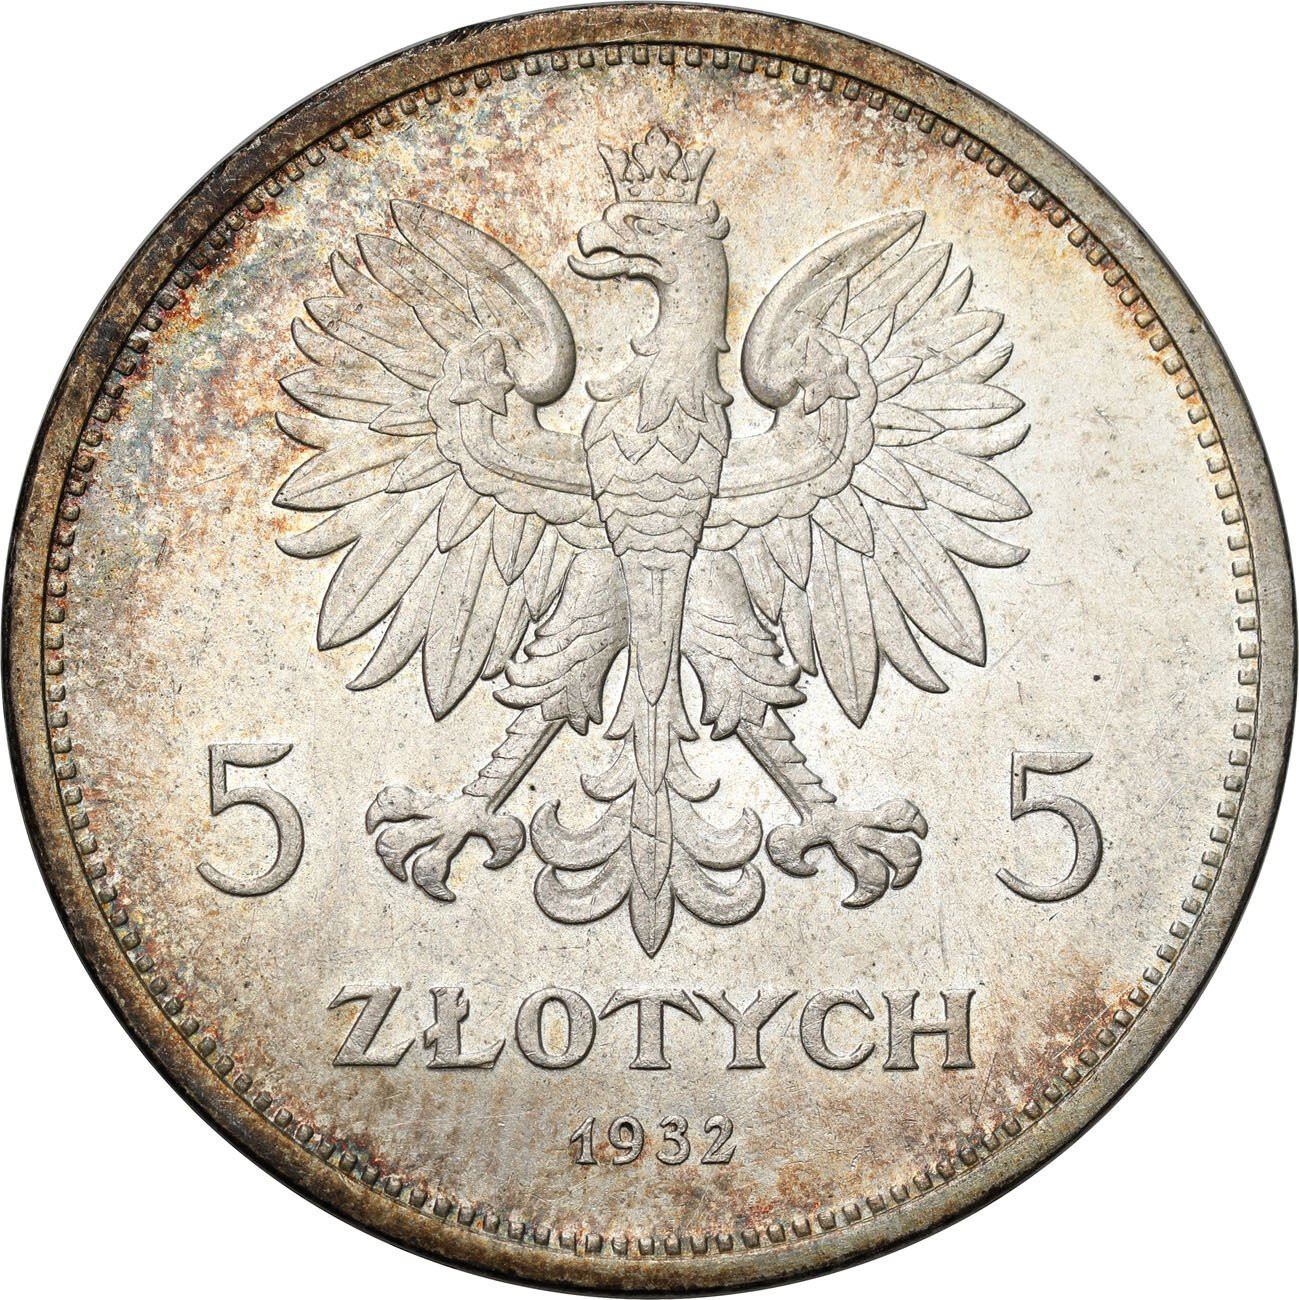 5 złotych 1932 Nike NGC MS61 Najrzadsza moneta obiegowa II RP - PIĘKNA i RZADKA